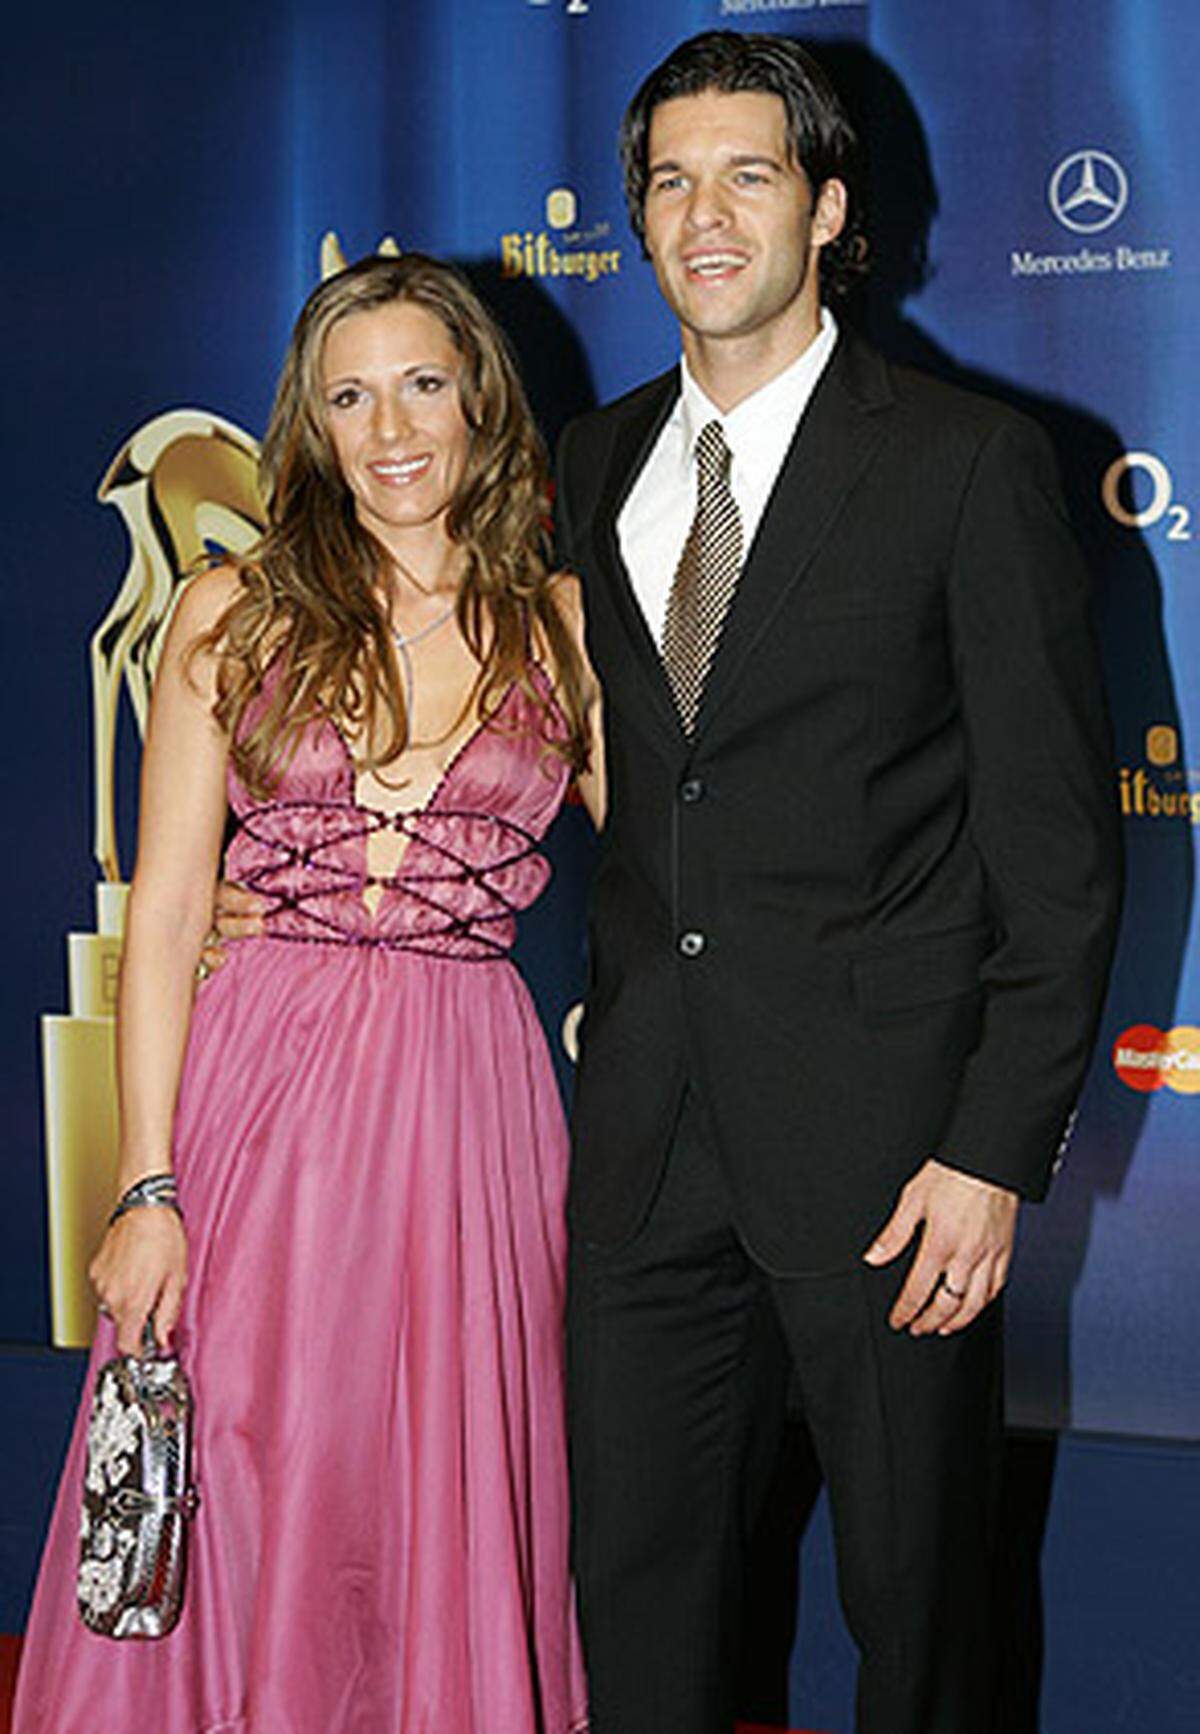 Michael Ballack, Kapitän der deutschen Mannschaft, hat auch mit seiner Verlobten Simone Lambe einen Treffer gelandet.